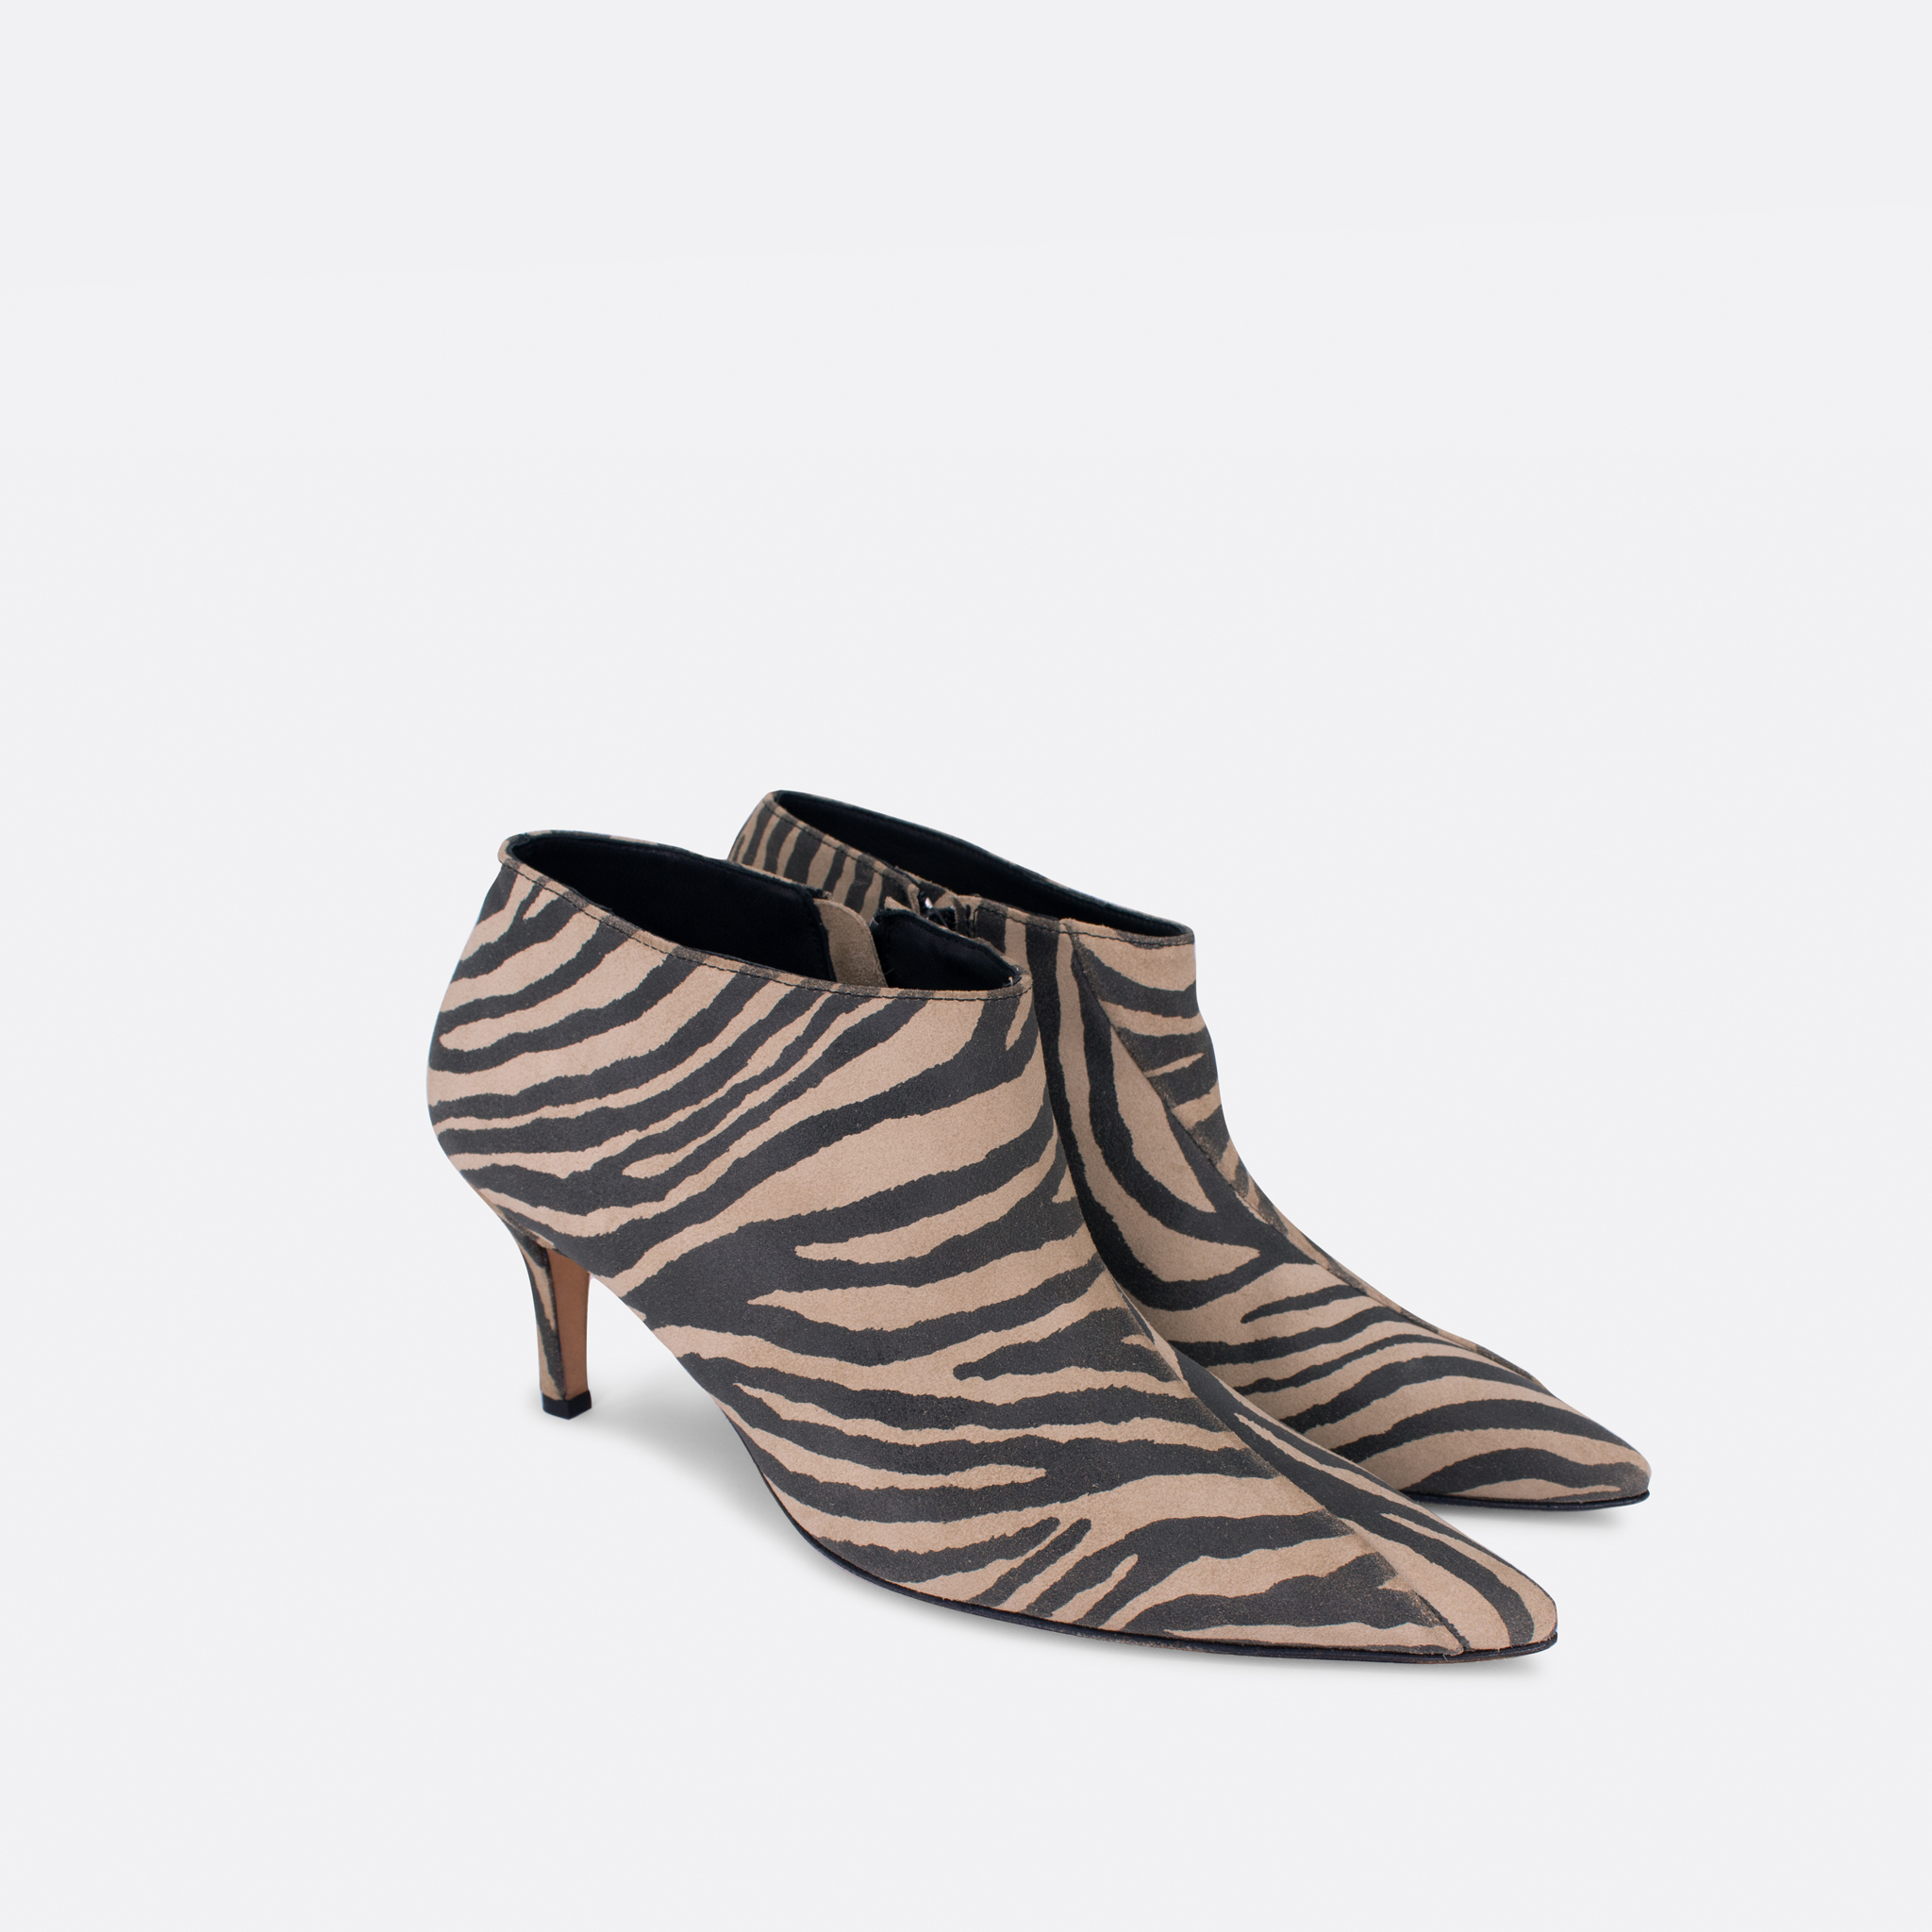 839 Bela zebra 02 - Lilu shoes